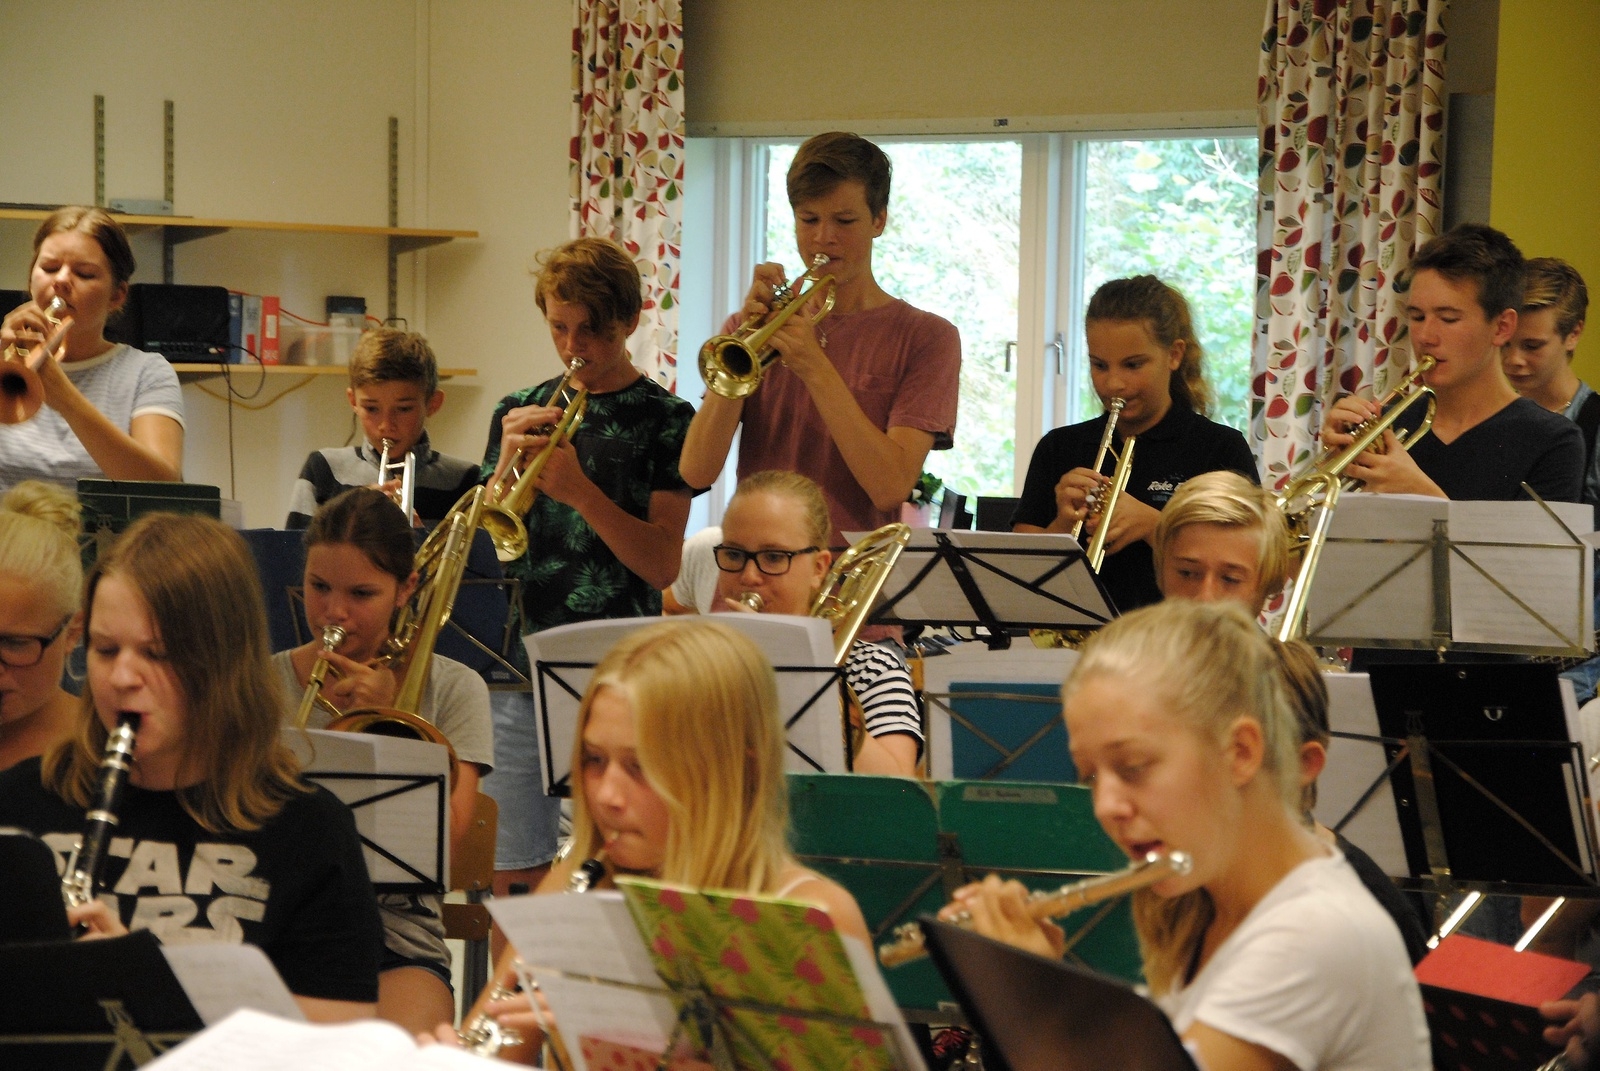 Blåsarläger i Glimåkra på Folkhögskolan. Här den äldre orkestern, med mer erfarenhet. Foto: Cajsa Bengtsson